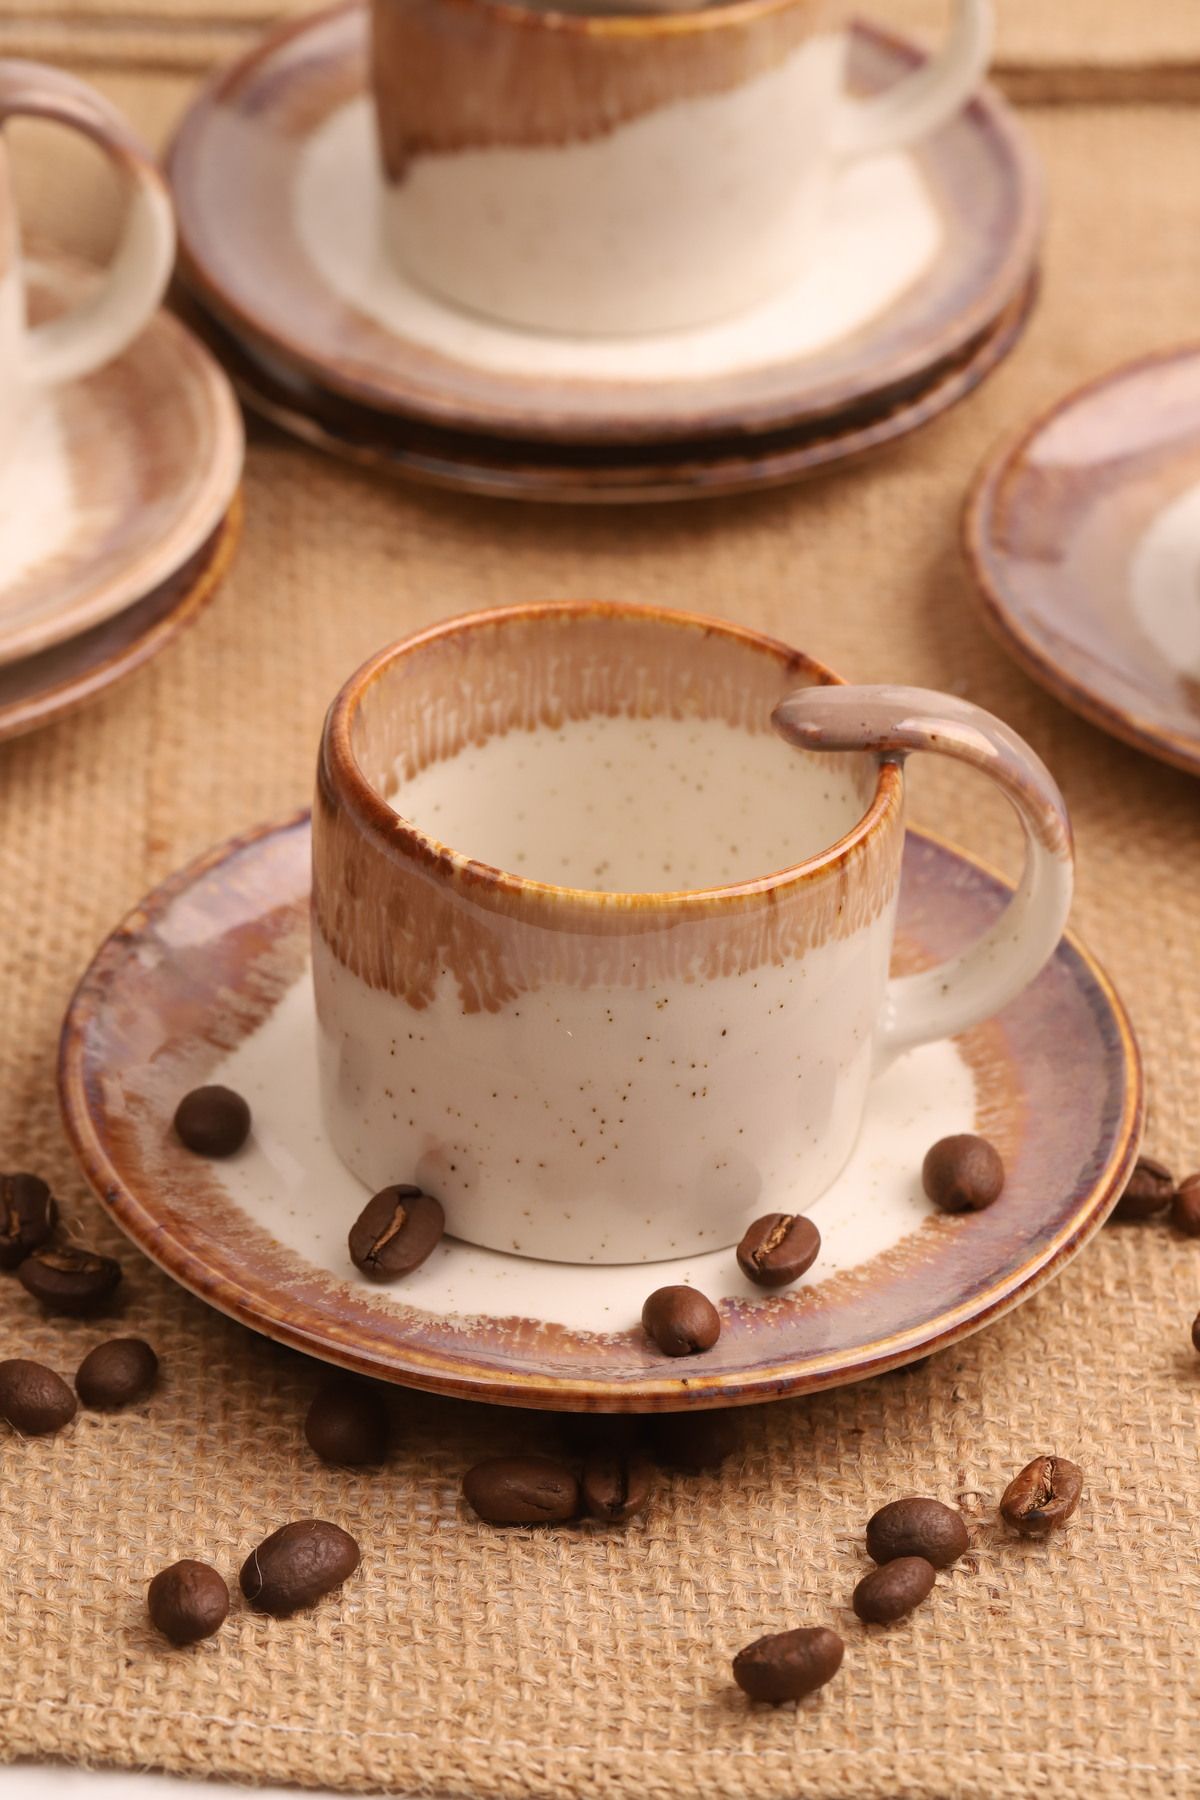 Atbyhome 6 Kişilik Porselen Kristal Kahve Fincan Takımı Kahverengi